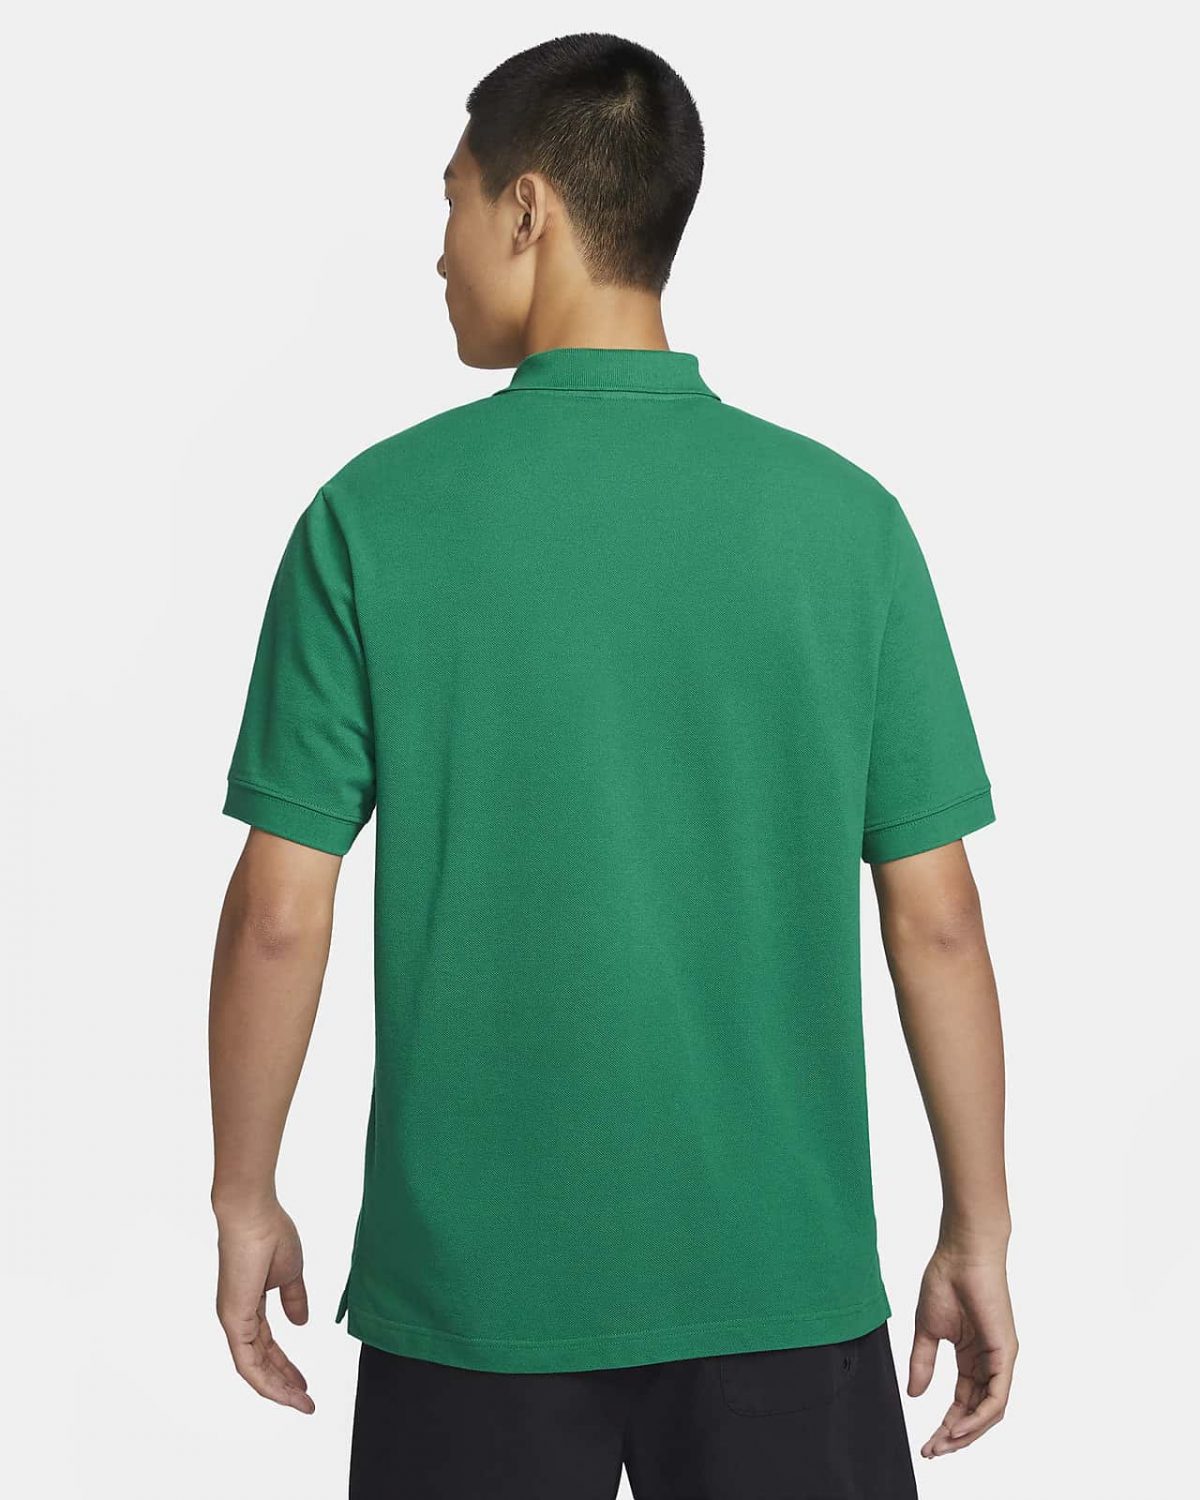 Мужская футболка Nike Club зеленая фотография